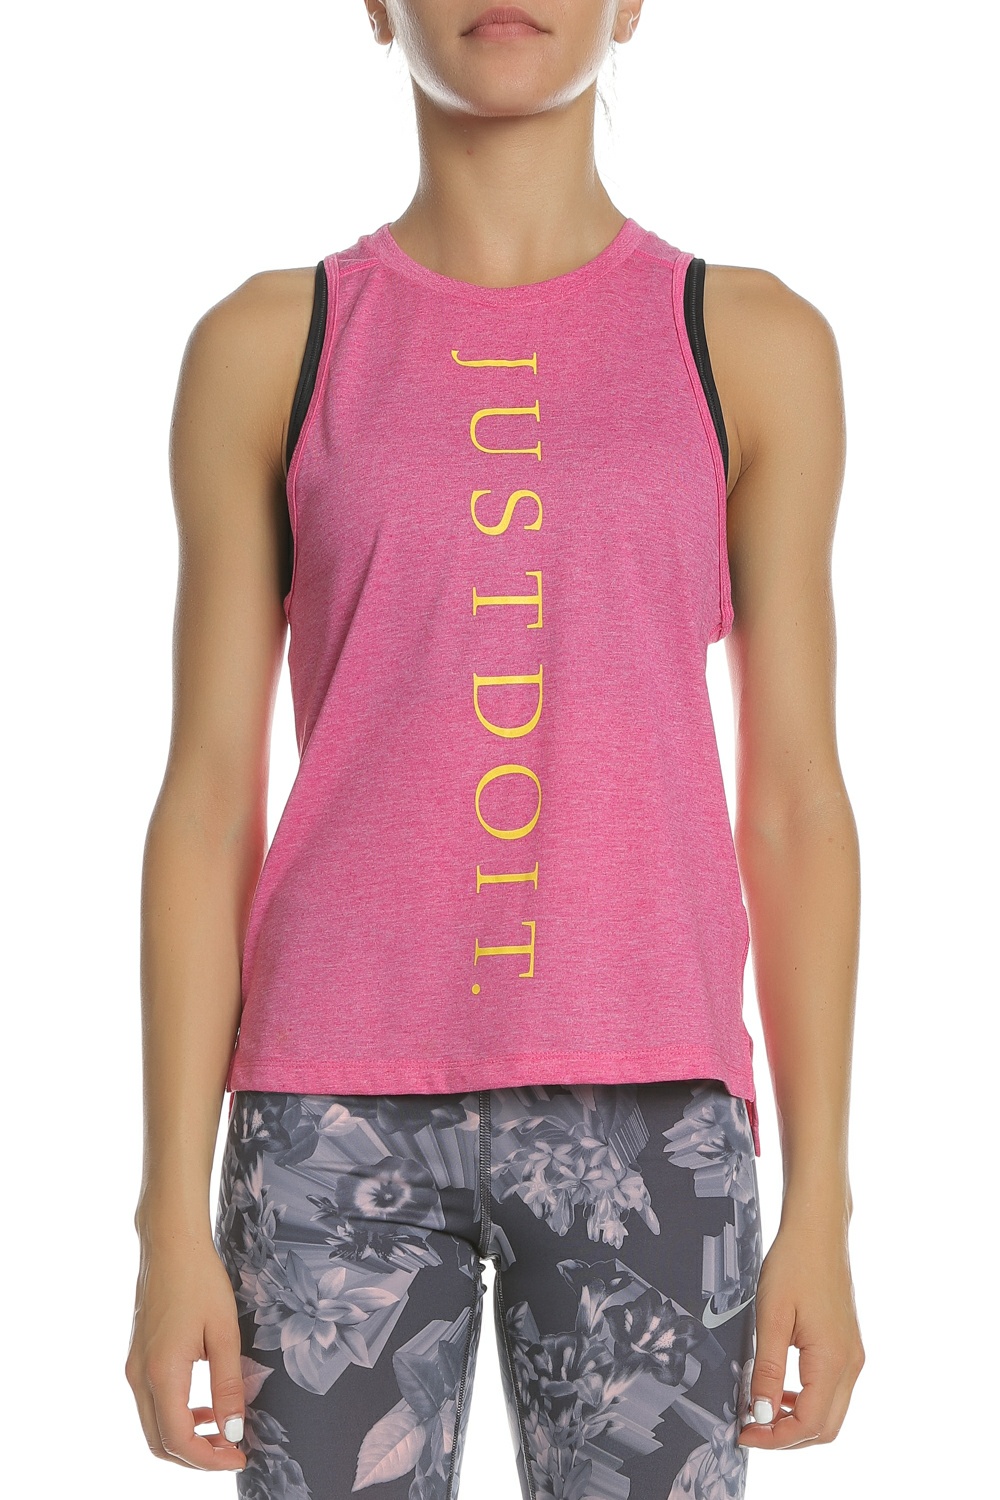 Γυναικεία/Ρούχα/Αθλητικά/T-shirt-Τοπ NIKE - Γυναικεία αμάνικη μπλούζα NIKE MILER TANK JDI ροζ